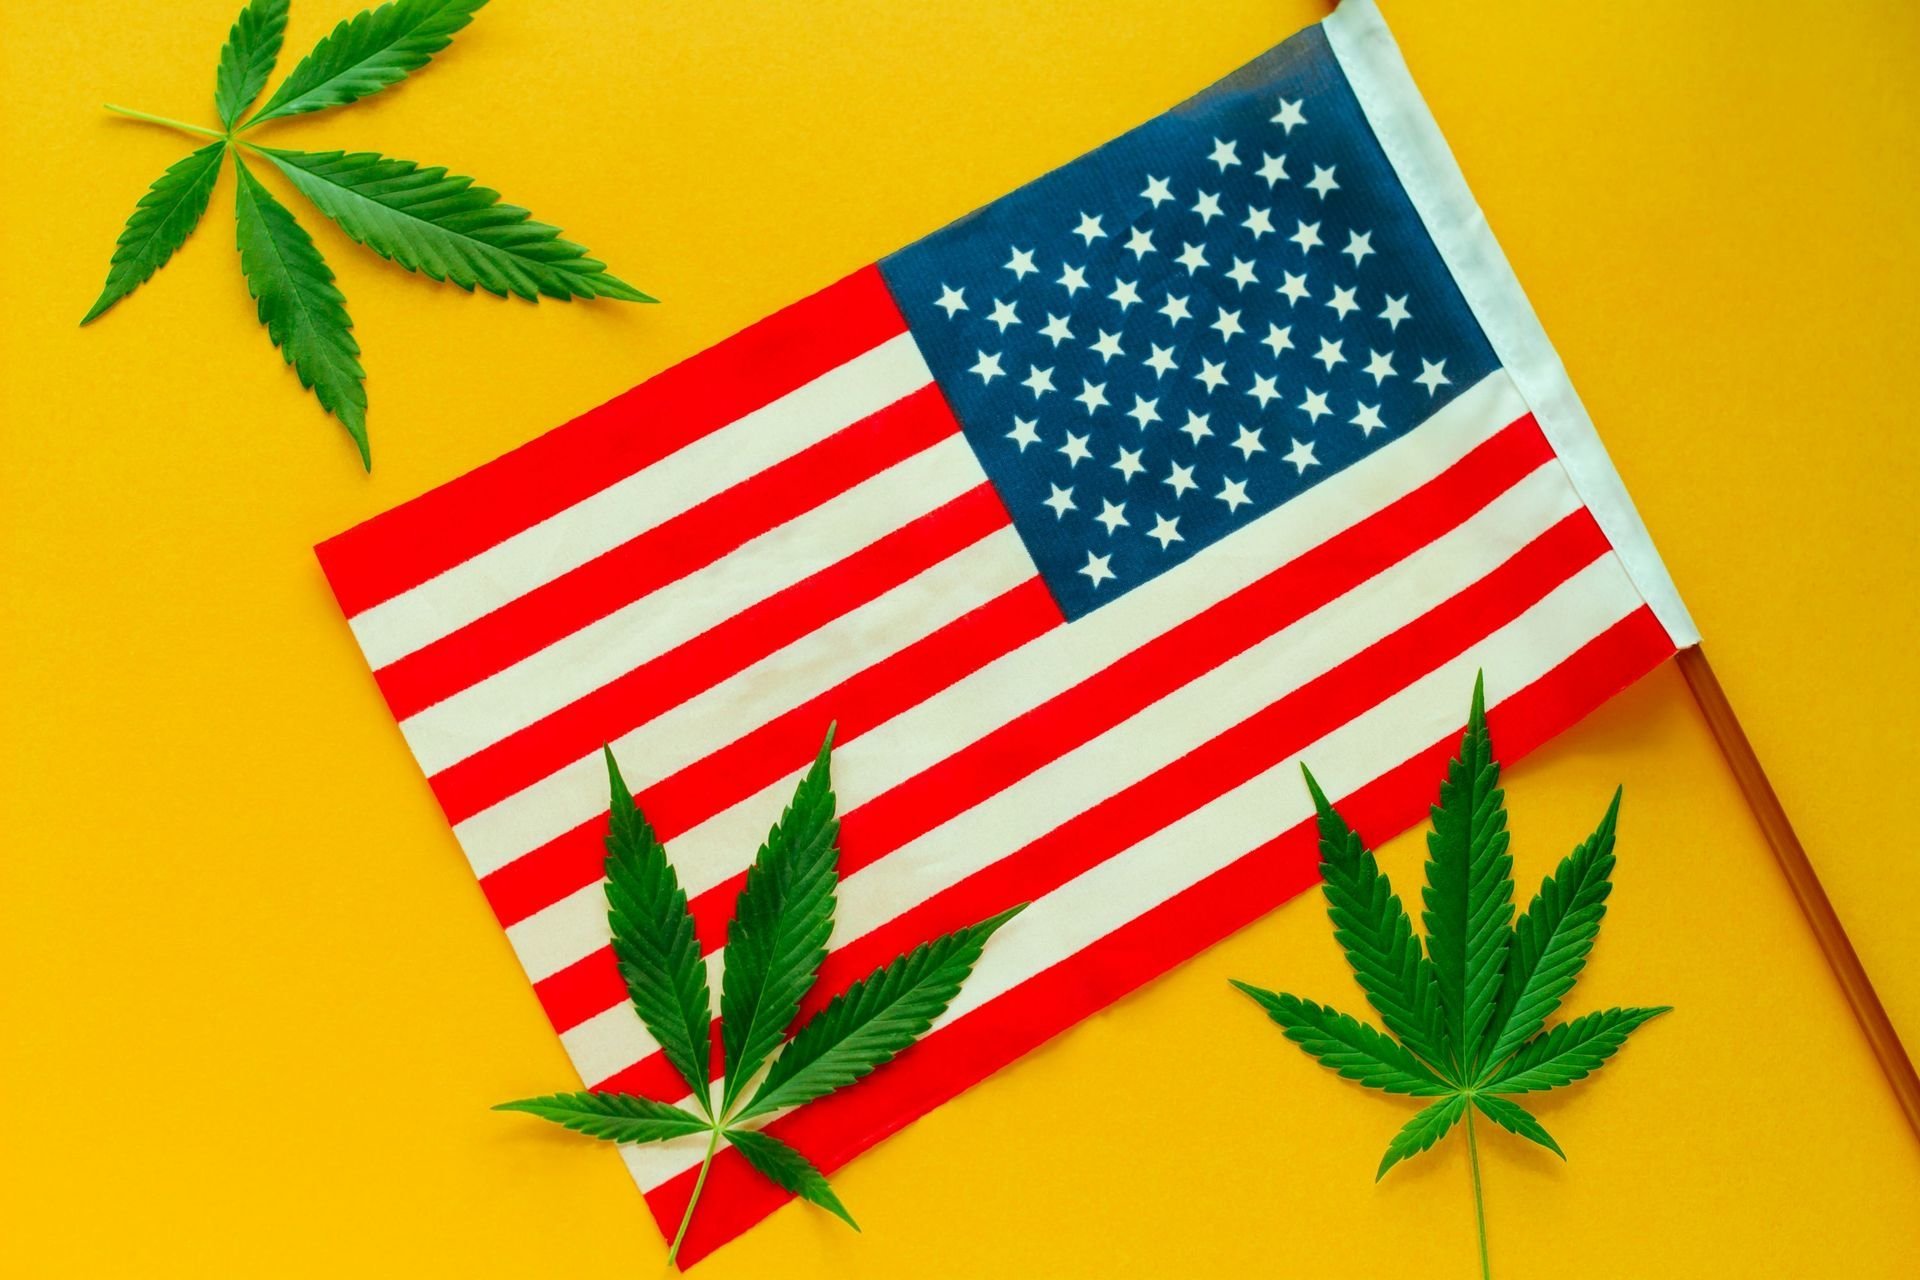 USA -  Les démocrates américains veulent légaliser la marijuana, mais pas Joe Biden